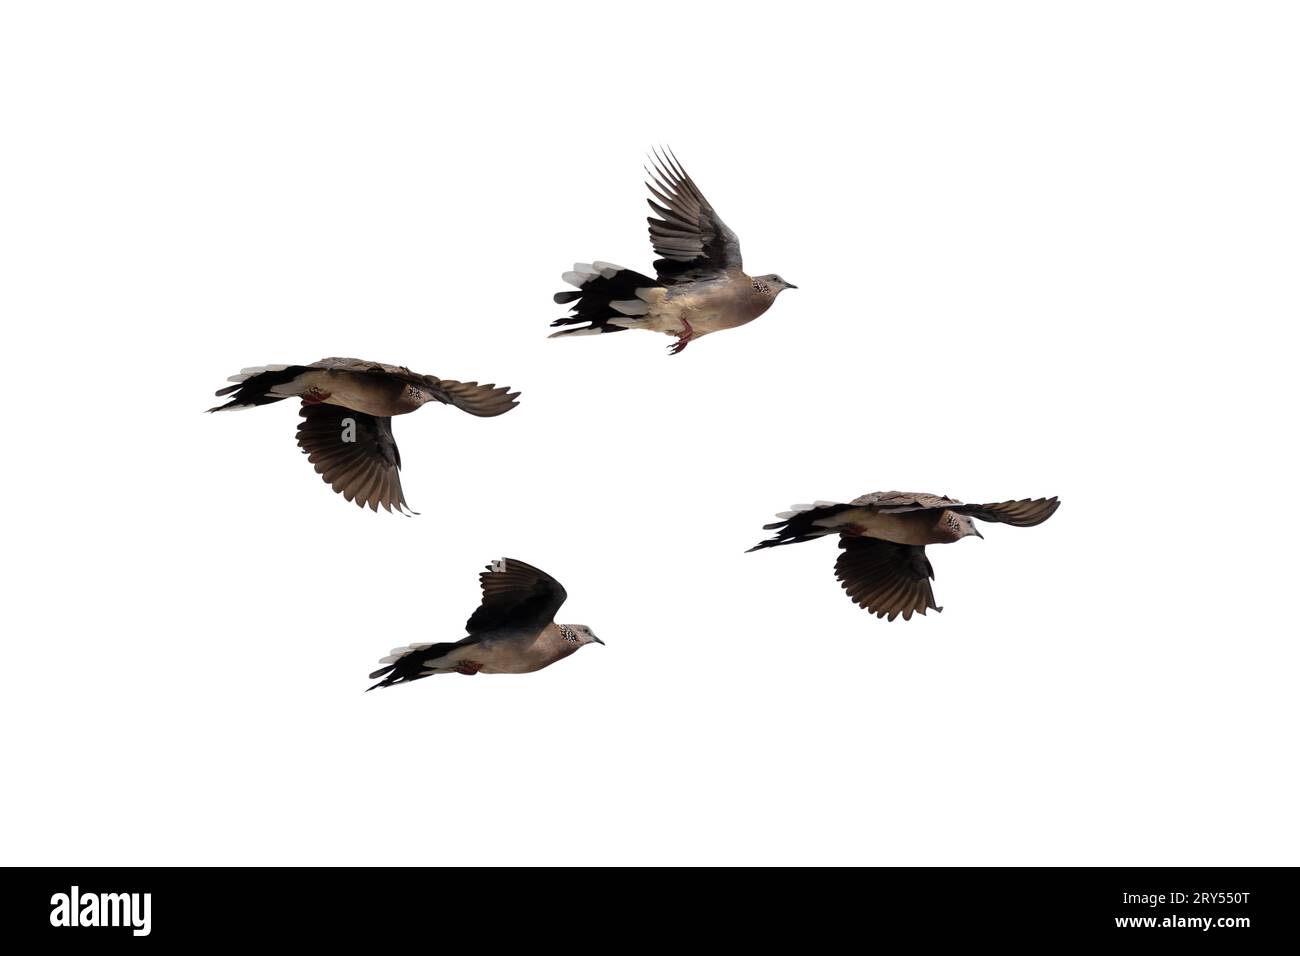 Die Bewegungsszene von vier gefleckten Tauben, die in der Luft fliegen, ist auf einem weißen Hintergrund isoliert. Vier gefleckte Tauben breiten ihre Flügel mit cl in der Luft aus Stockfoto